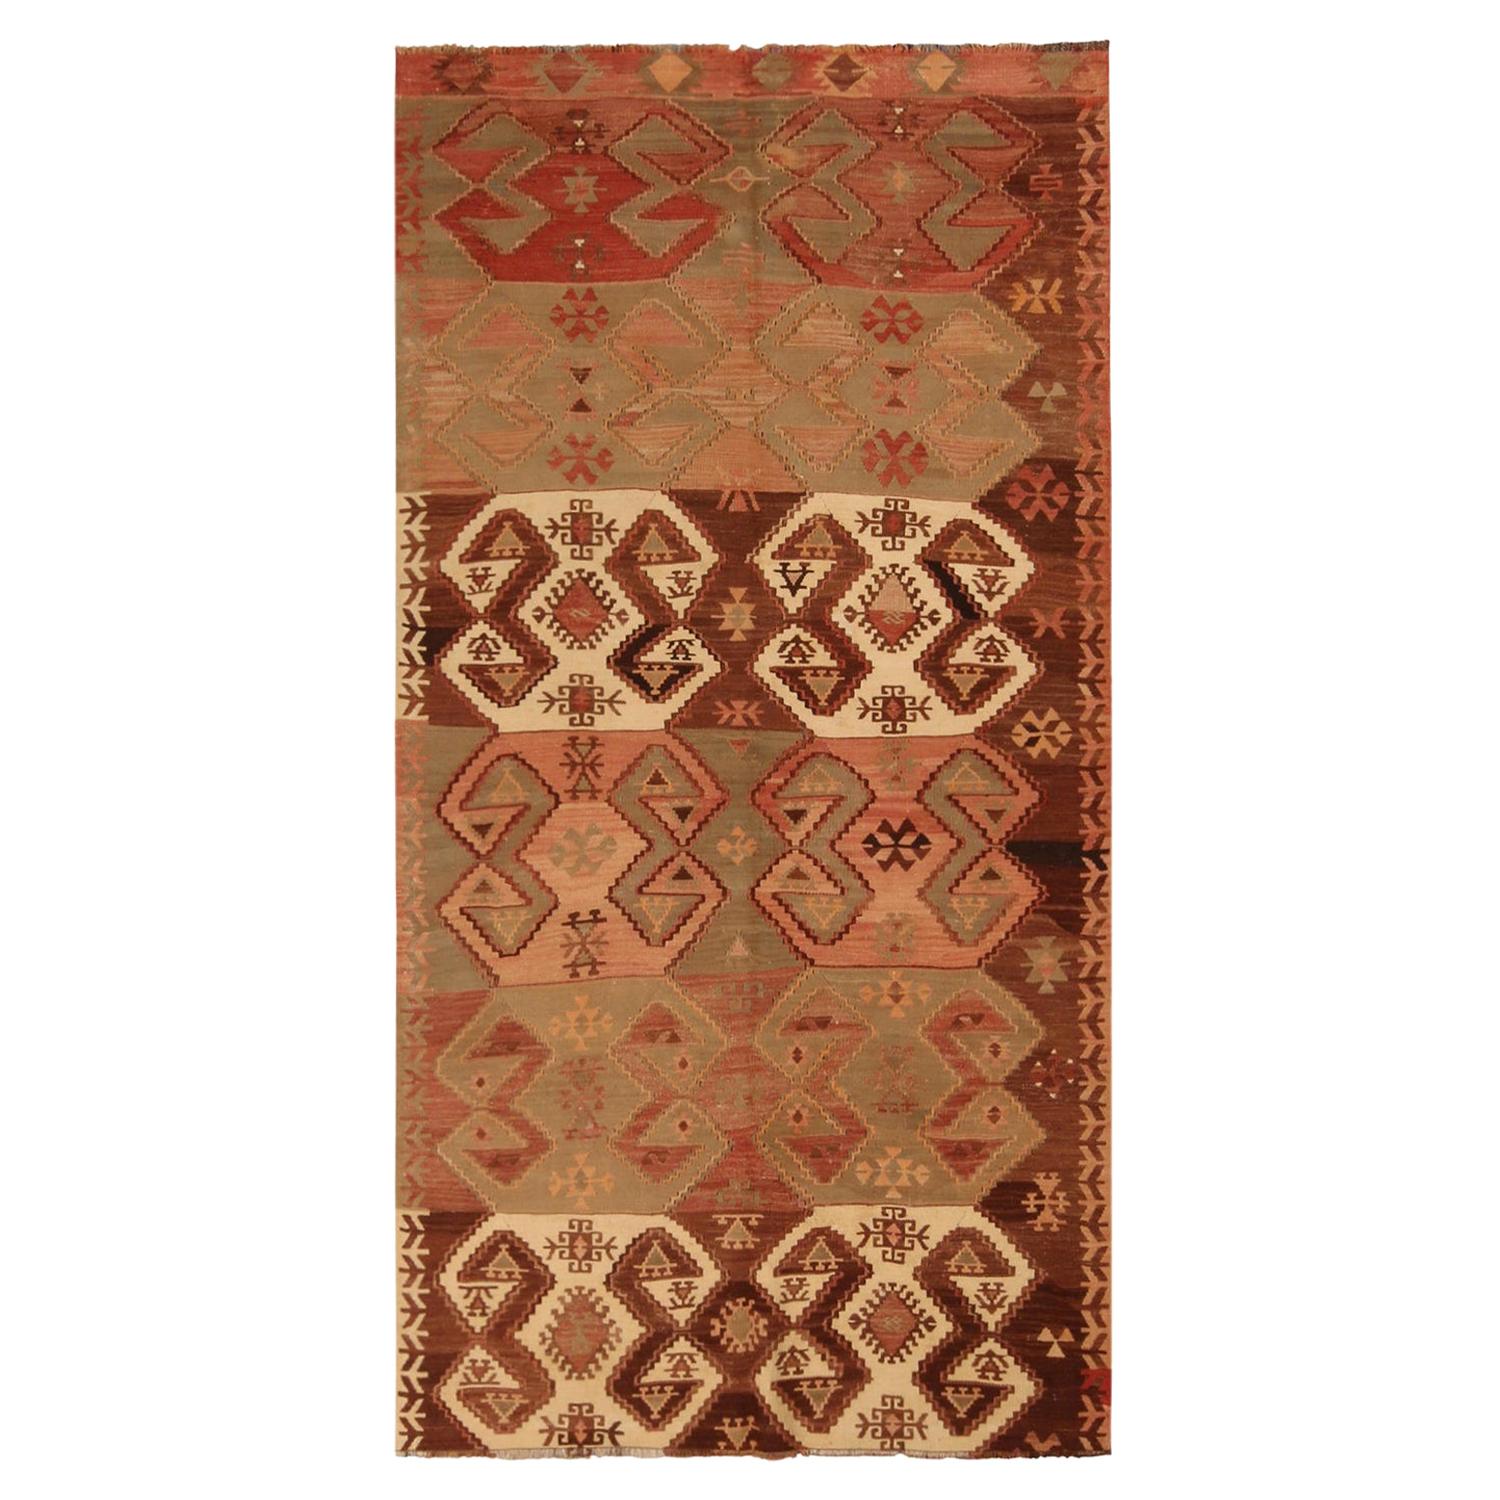 Roter und brauner Woll-Kelimteppich im Vintage-Stil von Emirdag mit weißen Akzenten von Teppich & Kelim